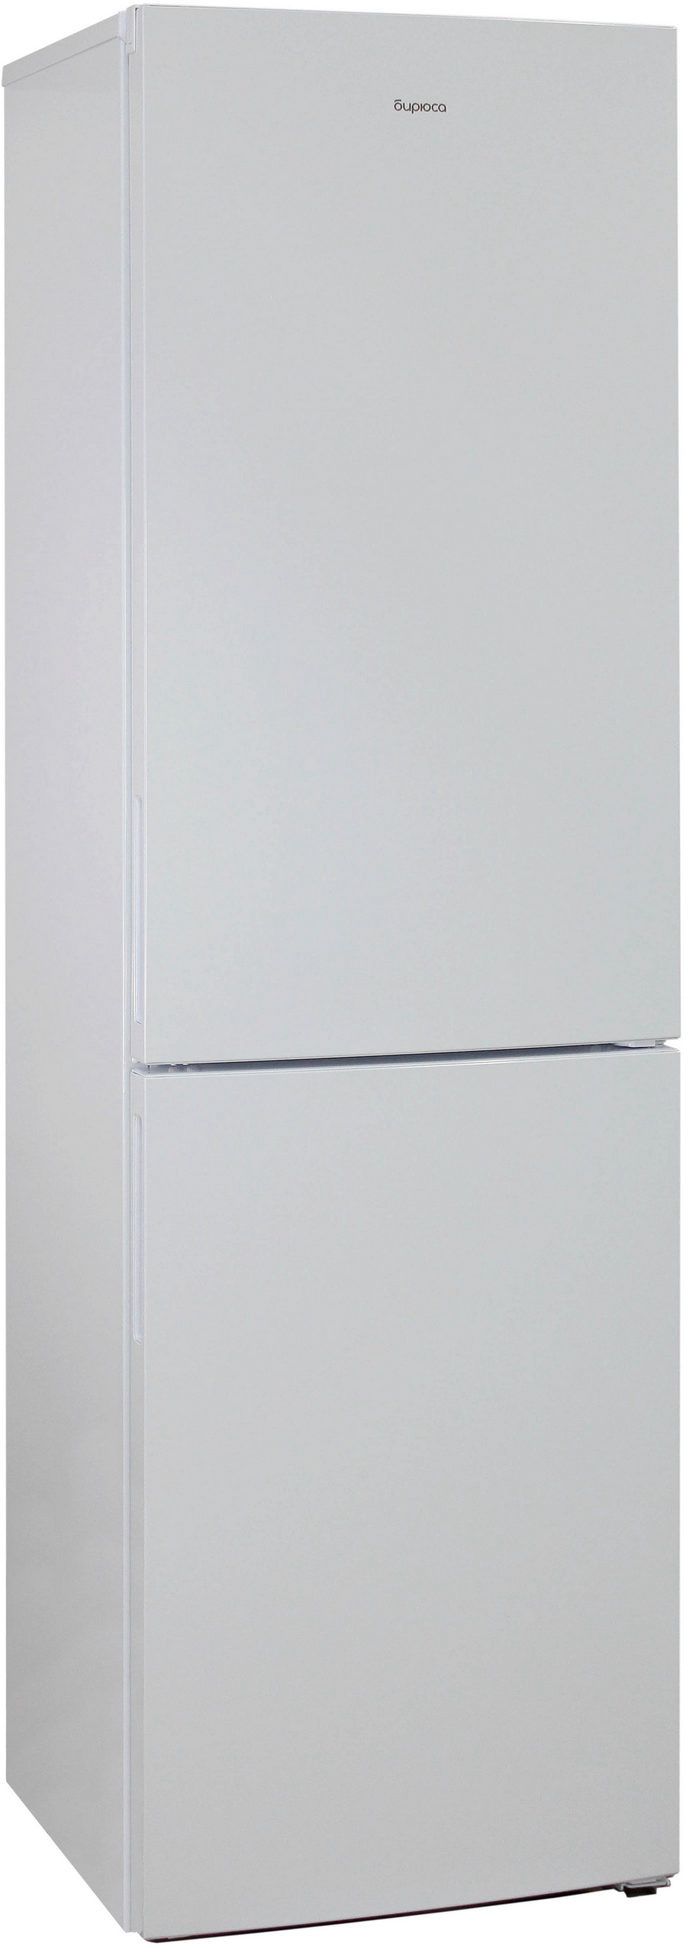 холодильник бирюса 6049, купить в Красноярске холодильник бирюса 6049,  купить в Красноярске дешево холодильник бирюса 6049, купить в Красноярске минимальной цене холодильник бирюса 6049